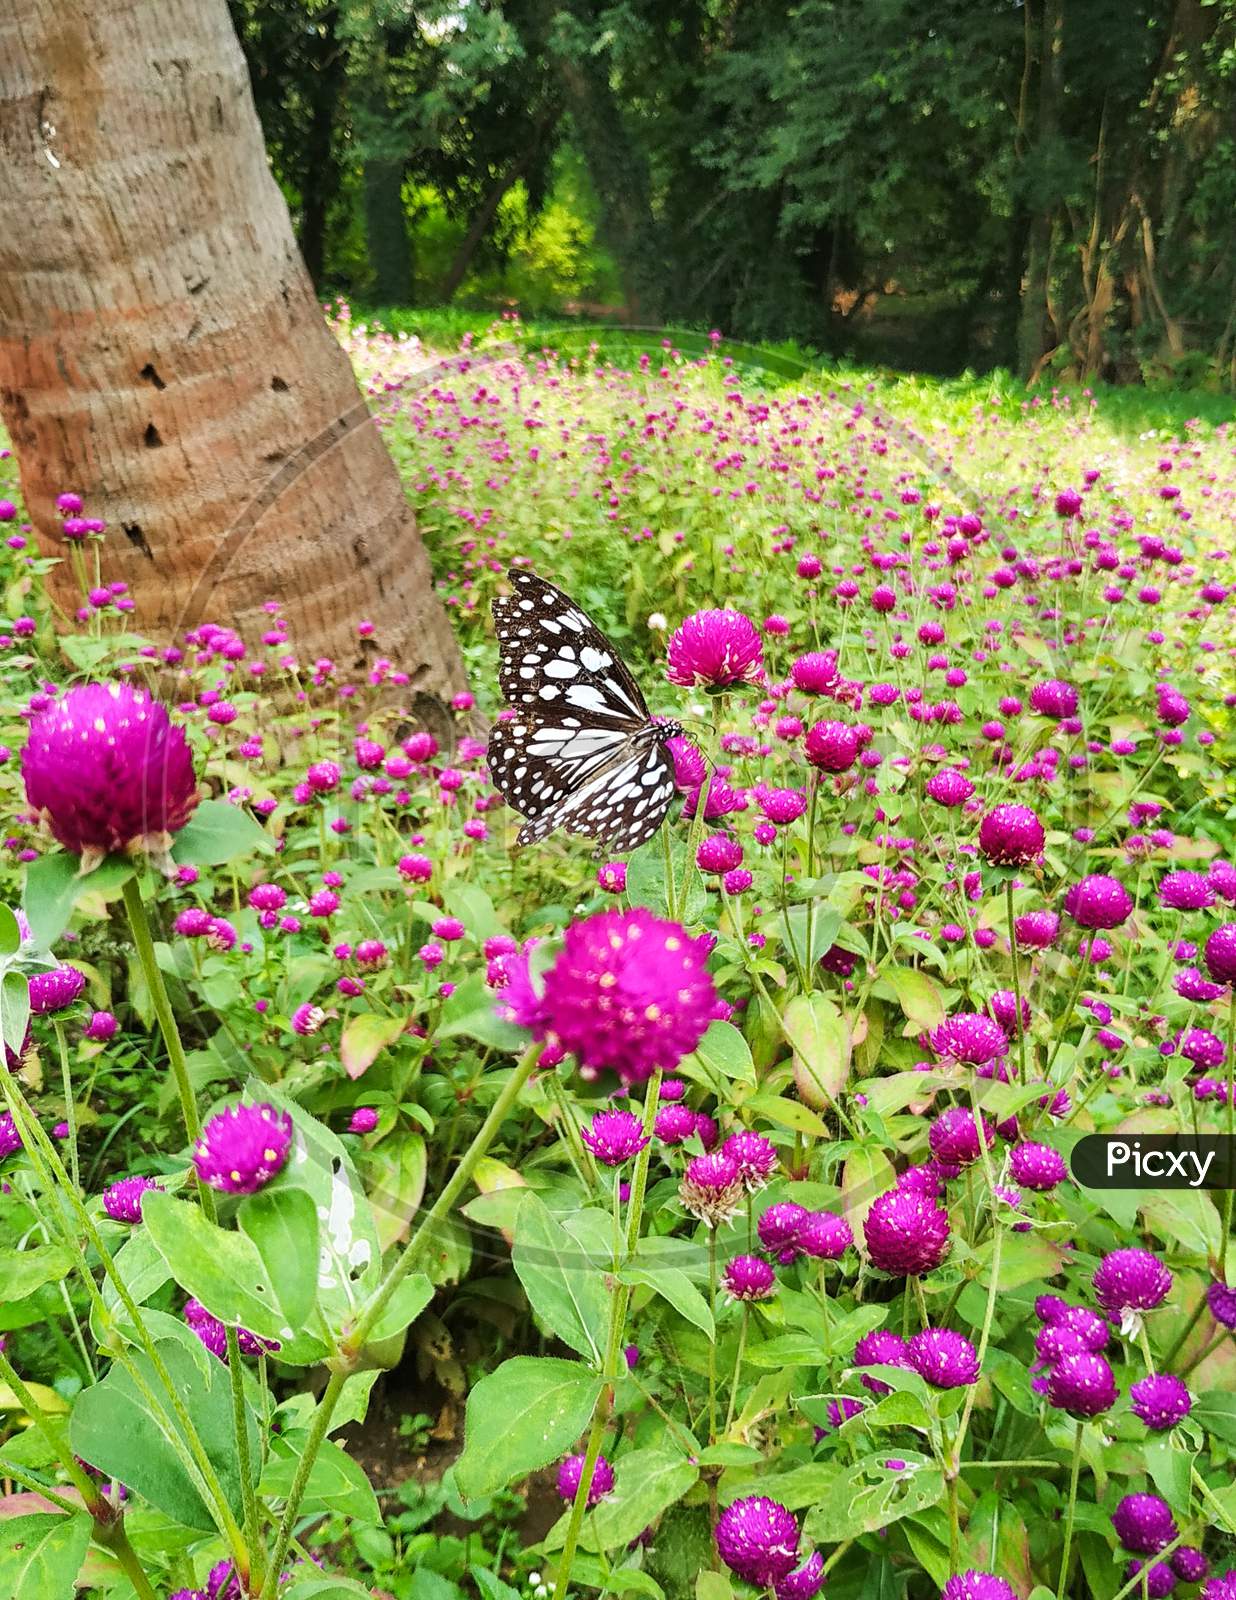 Butterfly in the flower garden